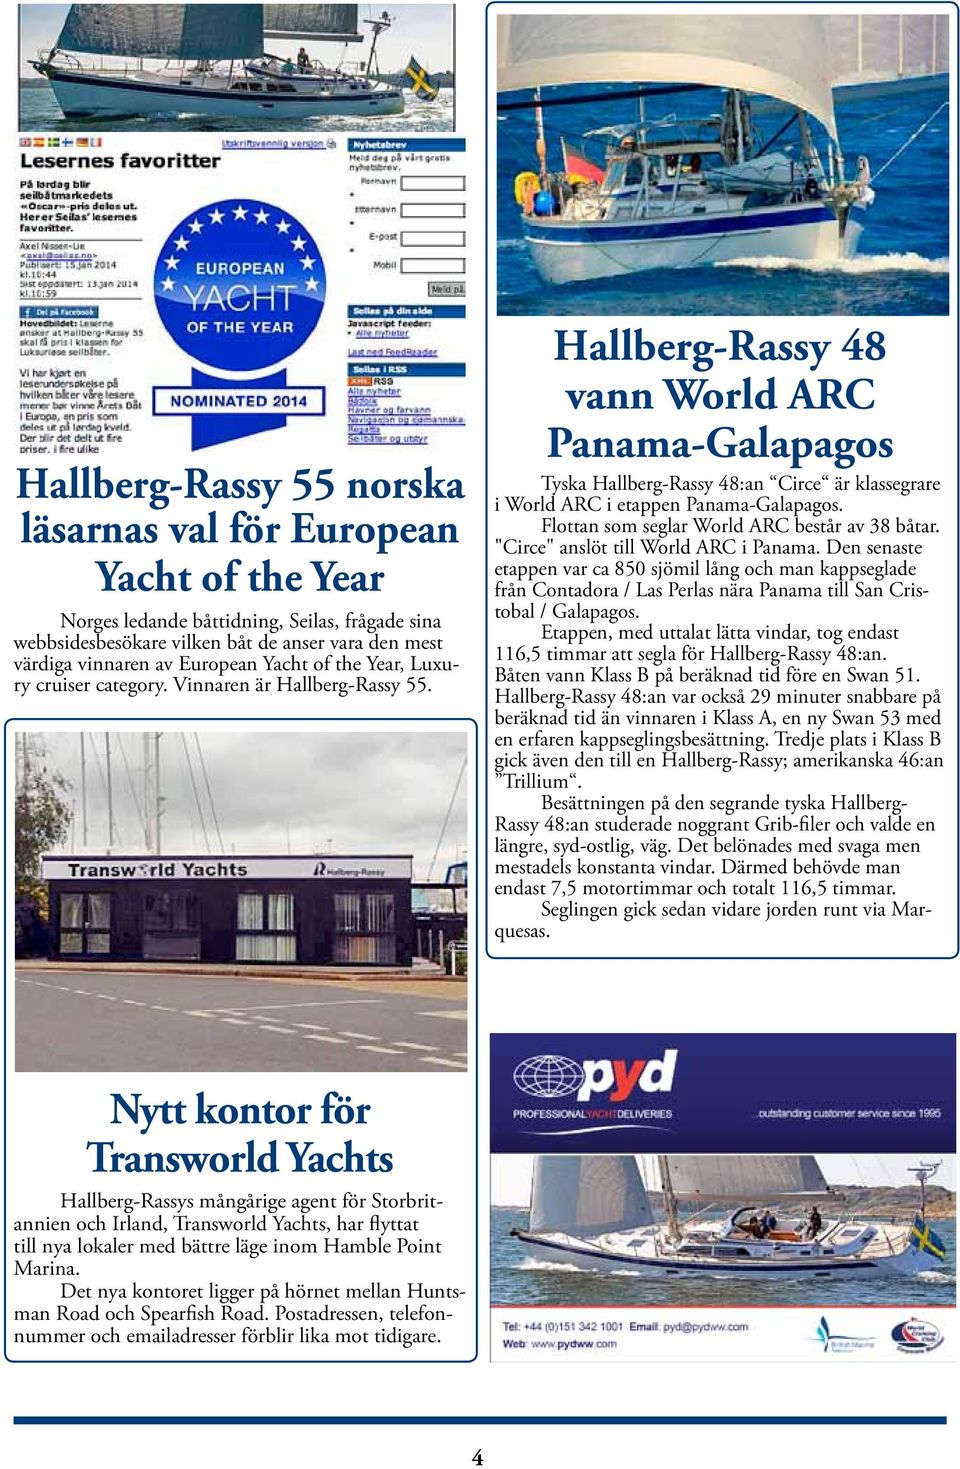 Hallberg-Rassy 48 vann World ARC Panama-Galapagos Tyska Hallberg-Rassy 48:an Circe är klassegrare i World ARC i etappen Panama-Galapagos. Flottan som seglar World ARC består av 38 båtar.